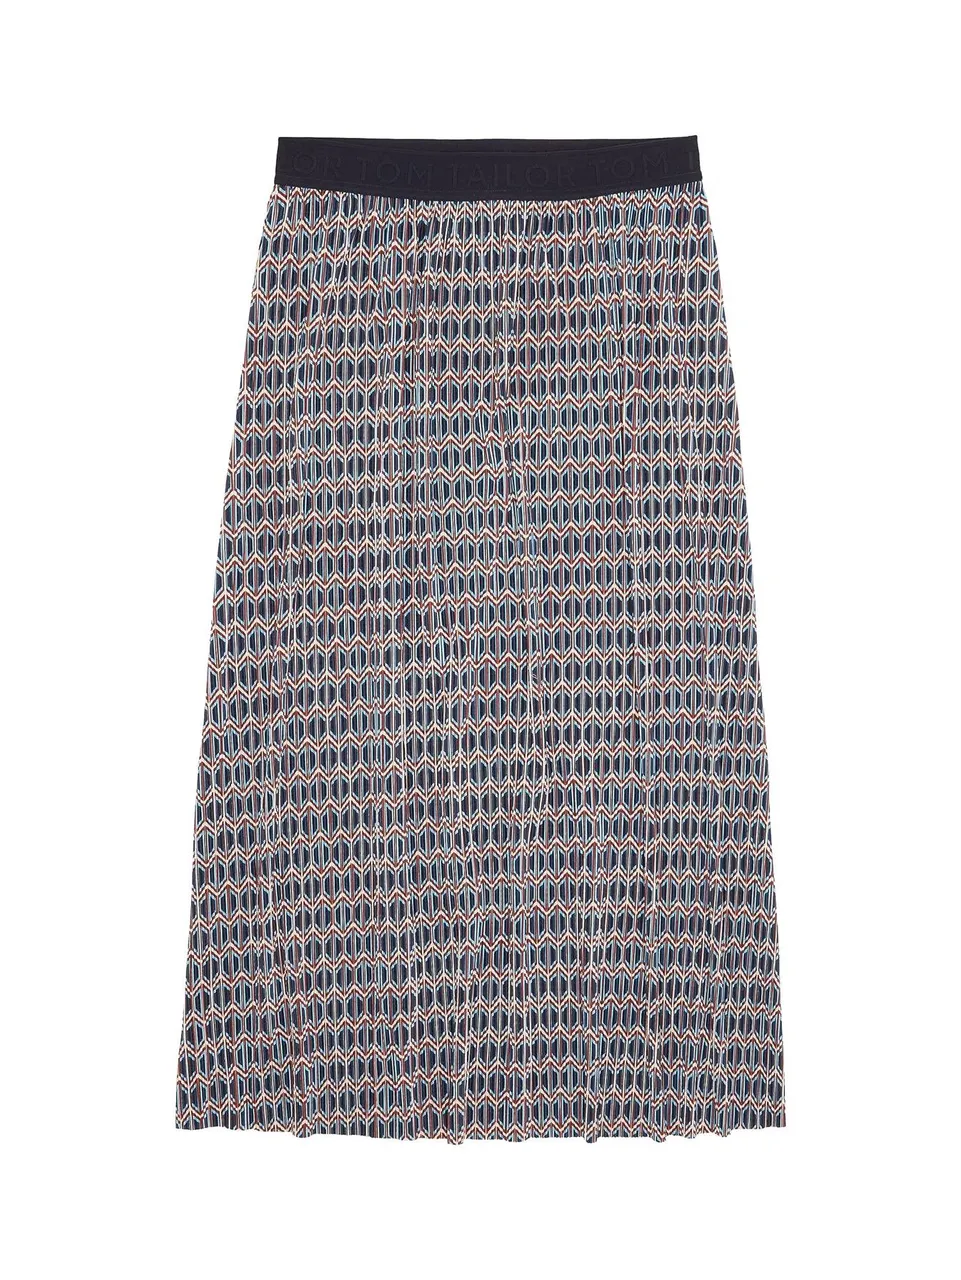 Faltenröcke skirt printed plissee